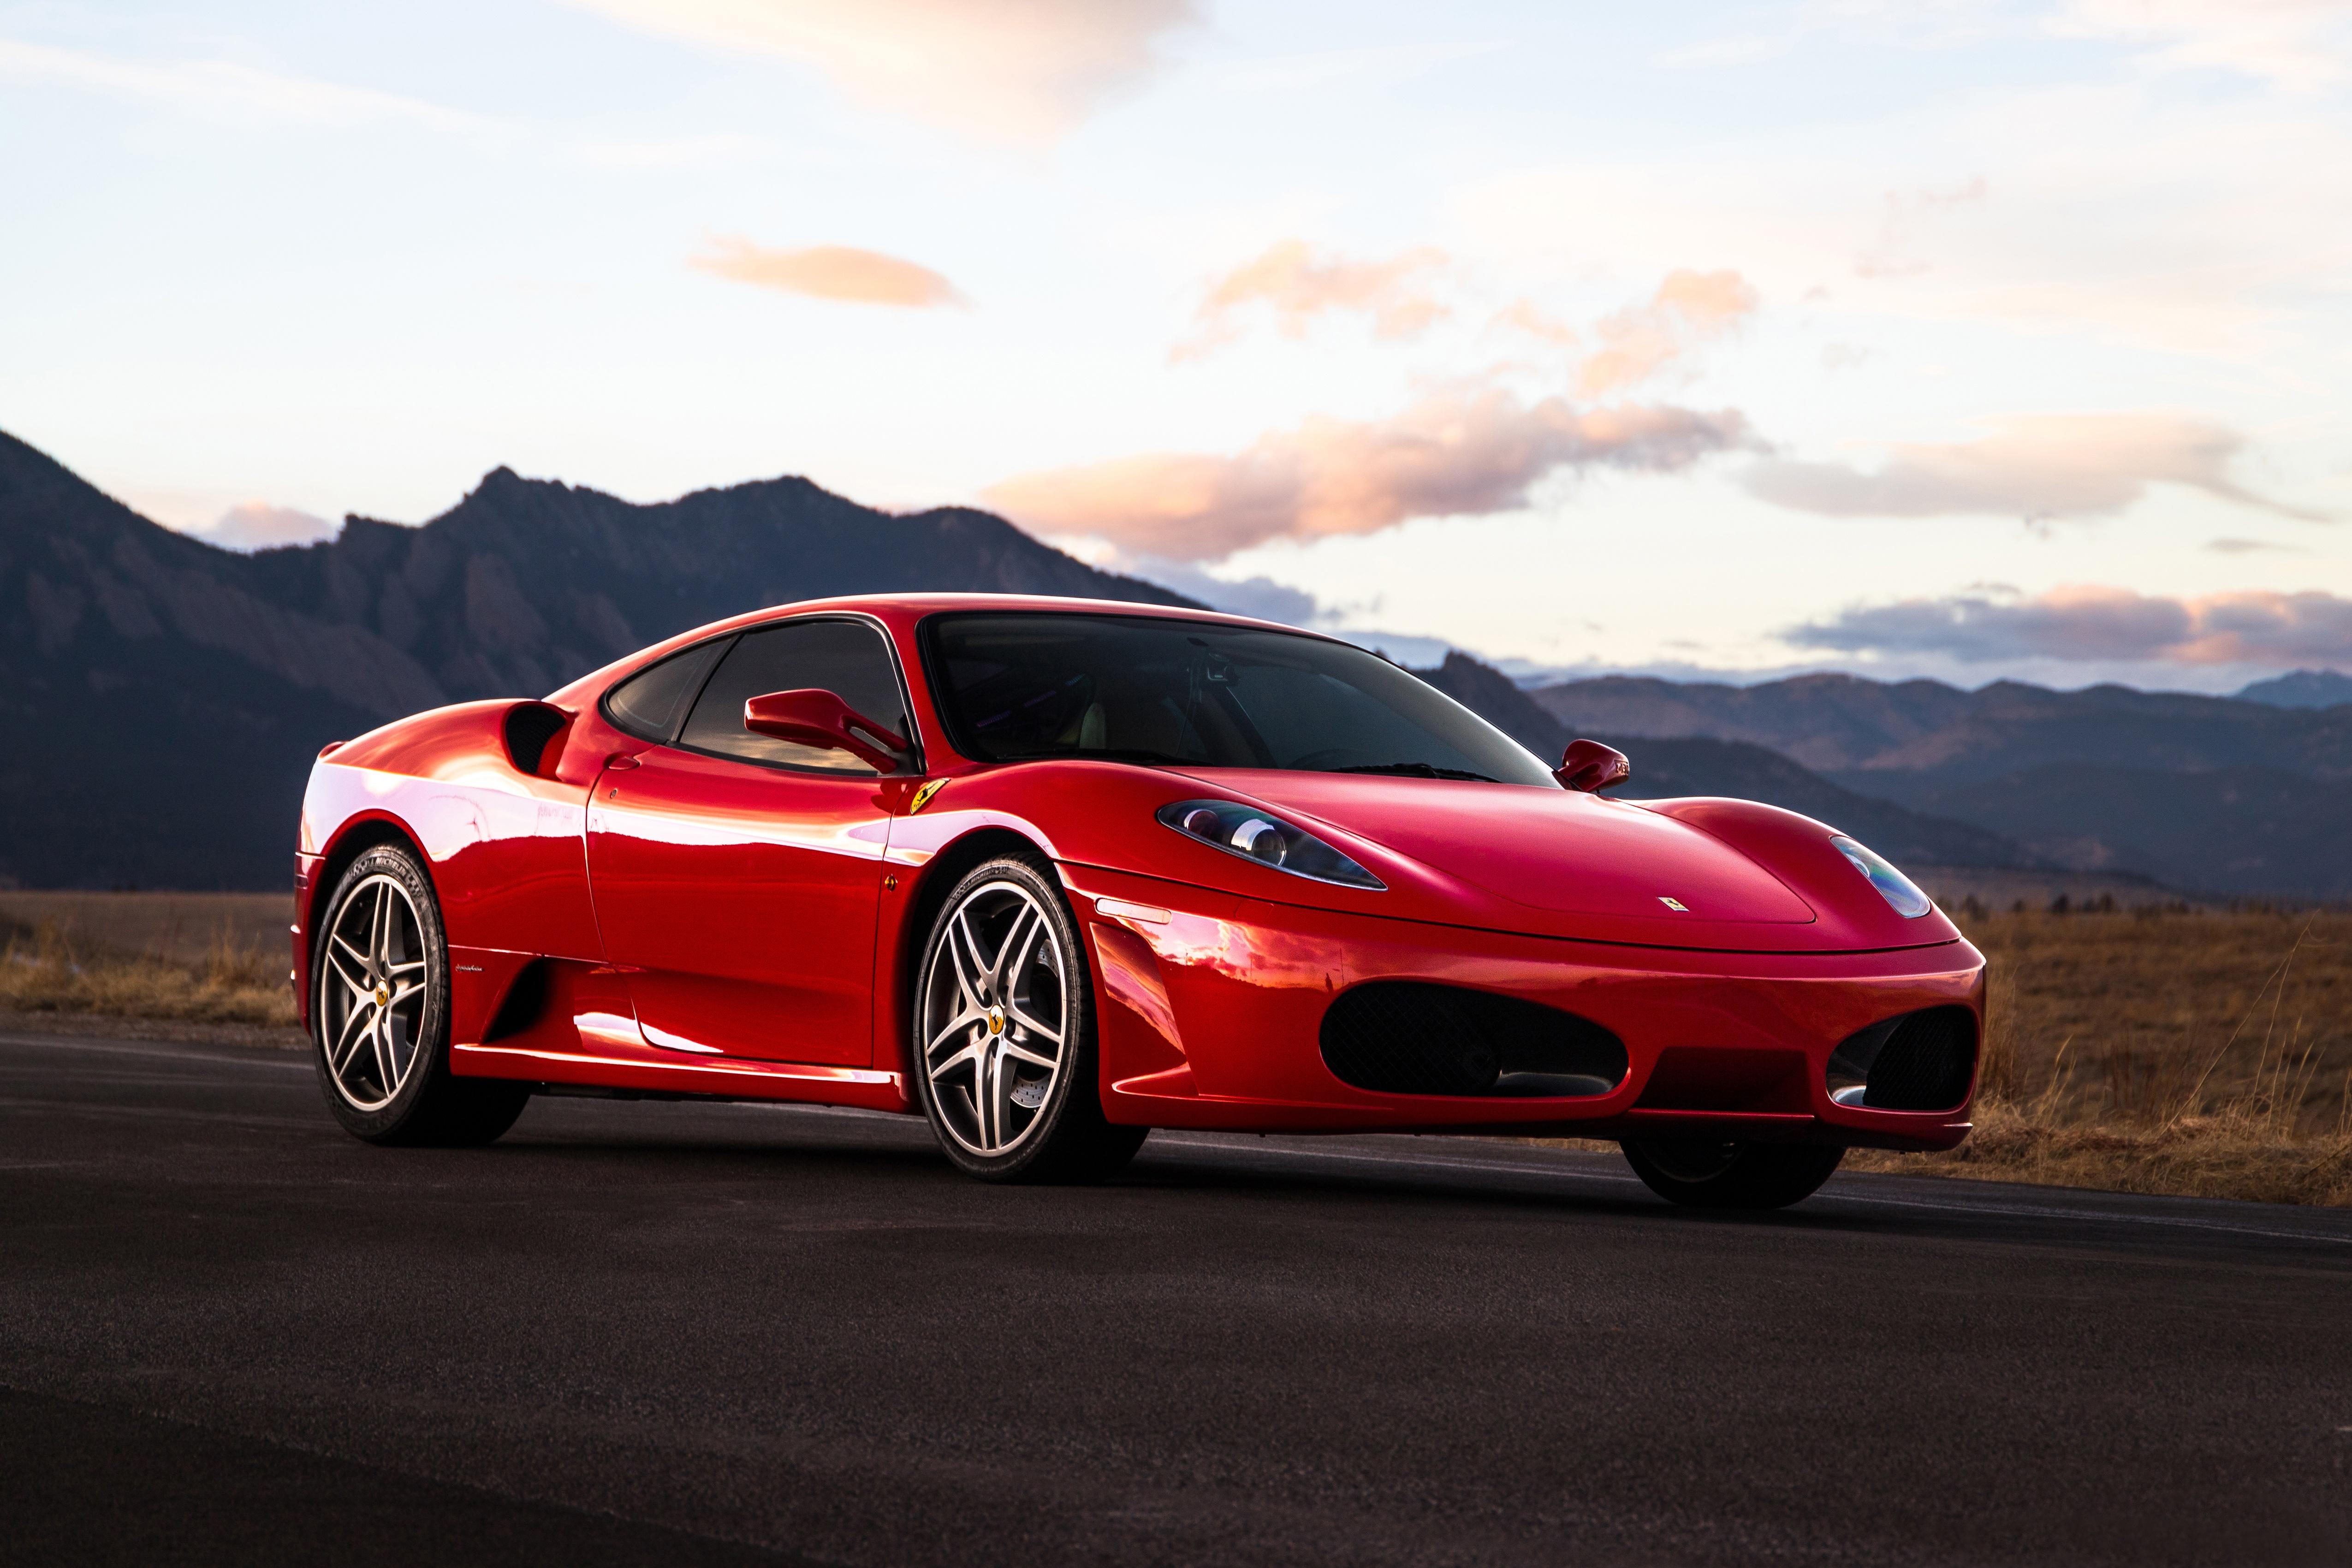 5100 x 3400 · jpeg - Ferrari F430 4k Ultra HD Wallpaper | Background Image | 5100x3400 | ID ...